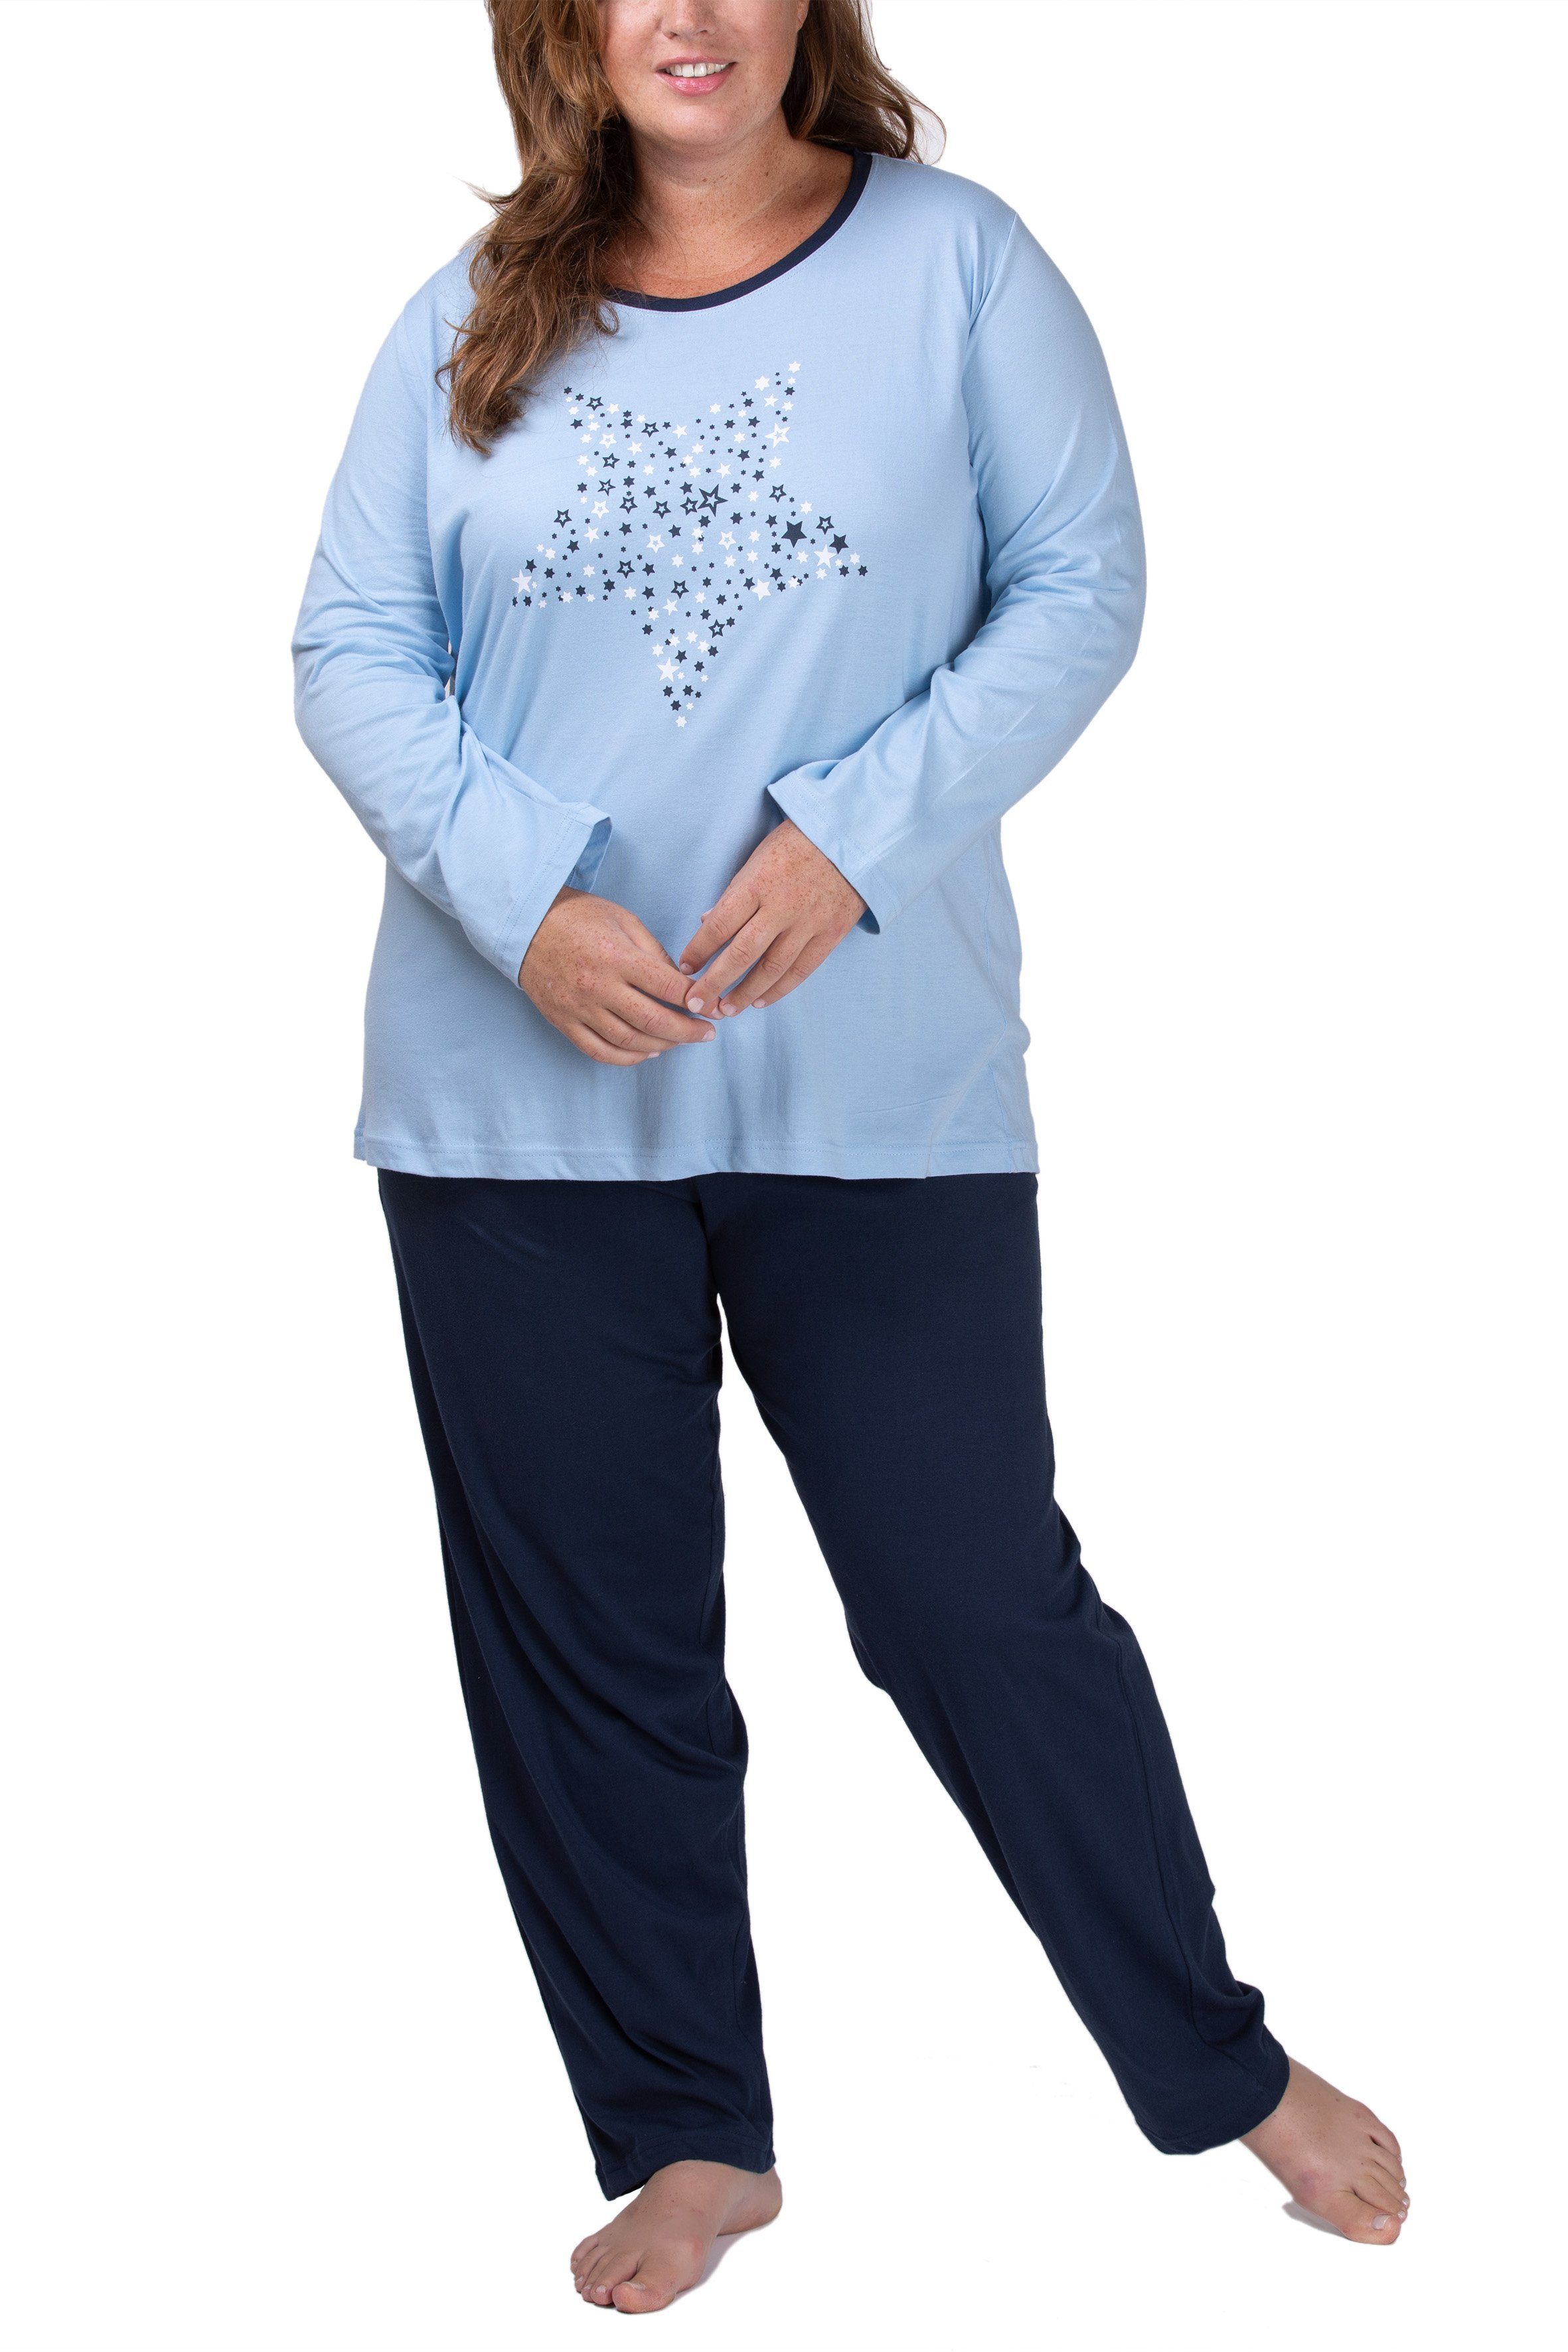 Moonline Pyjama Damen Schlafanzug Pyjama in großen Größen (Übergröße XL - 4XL) aus 100% Baumwolle hell blau